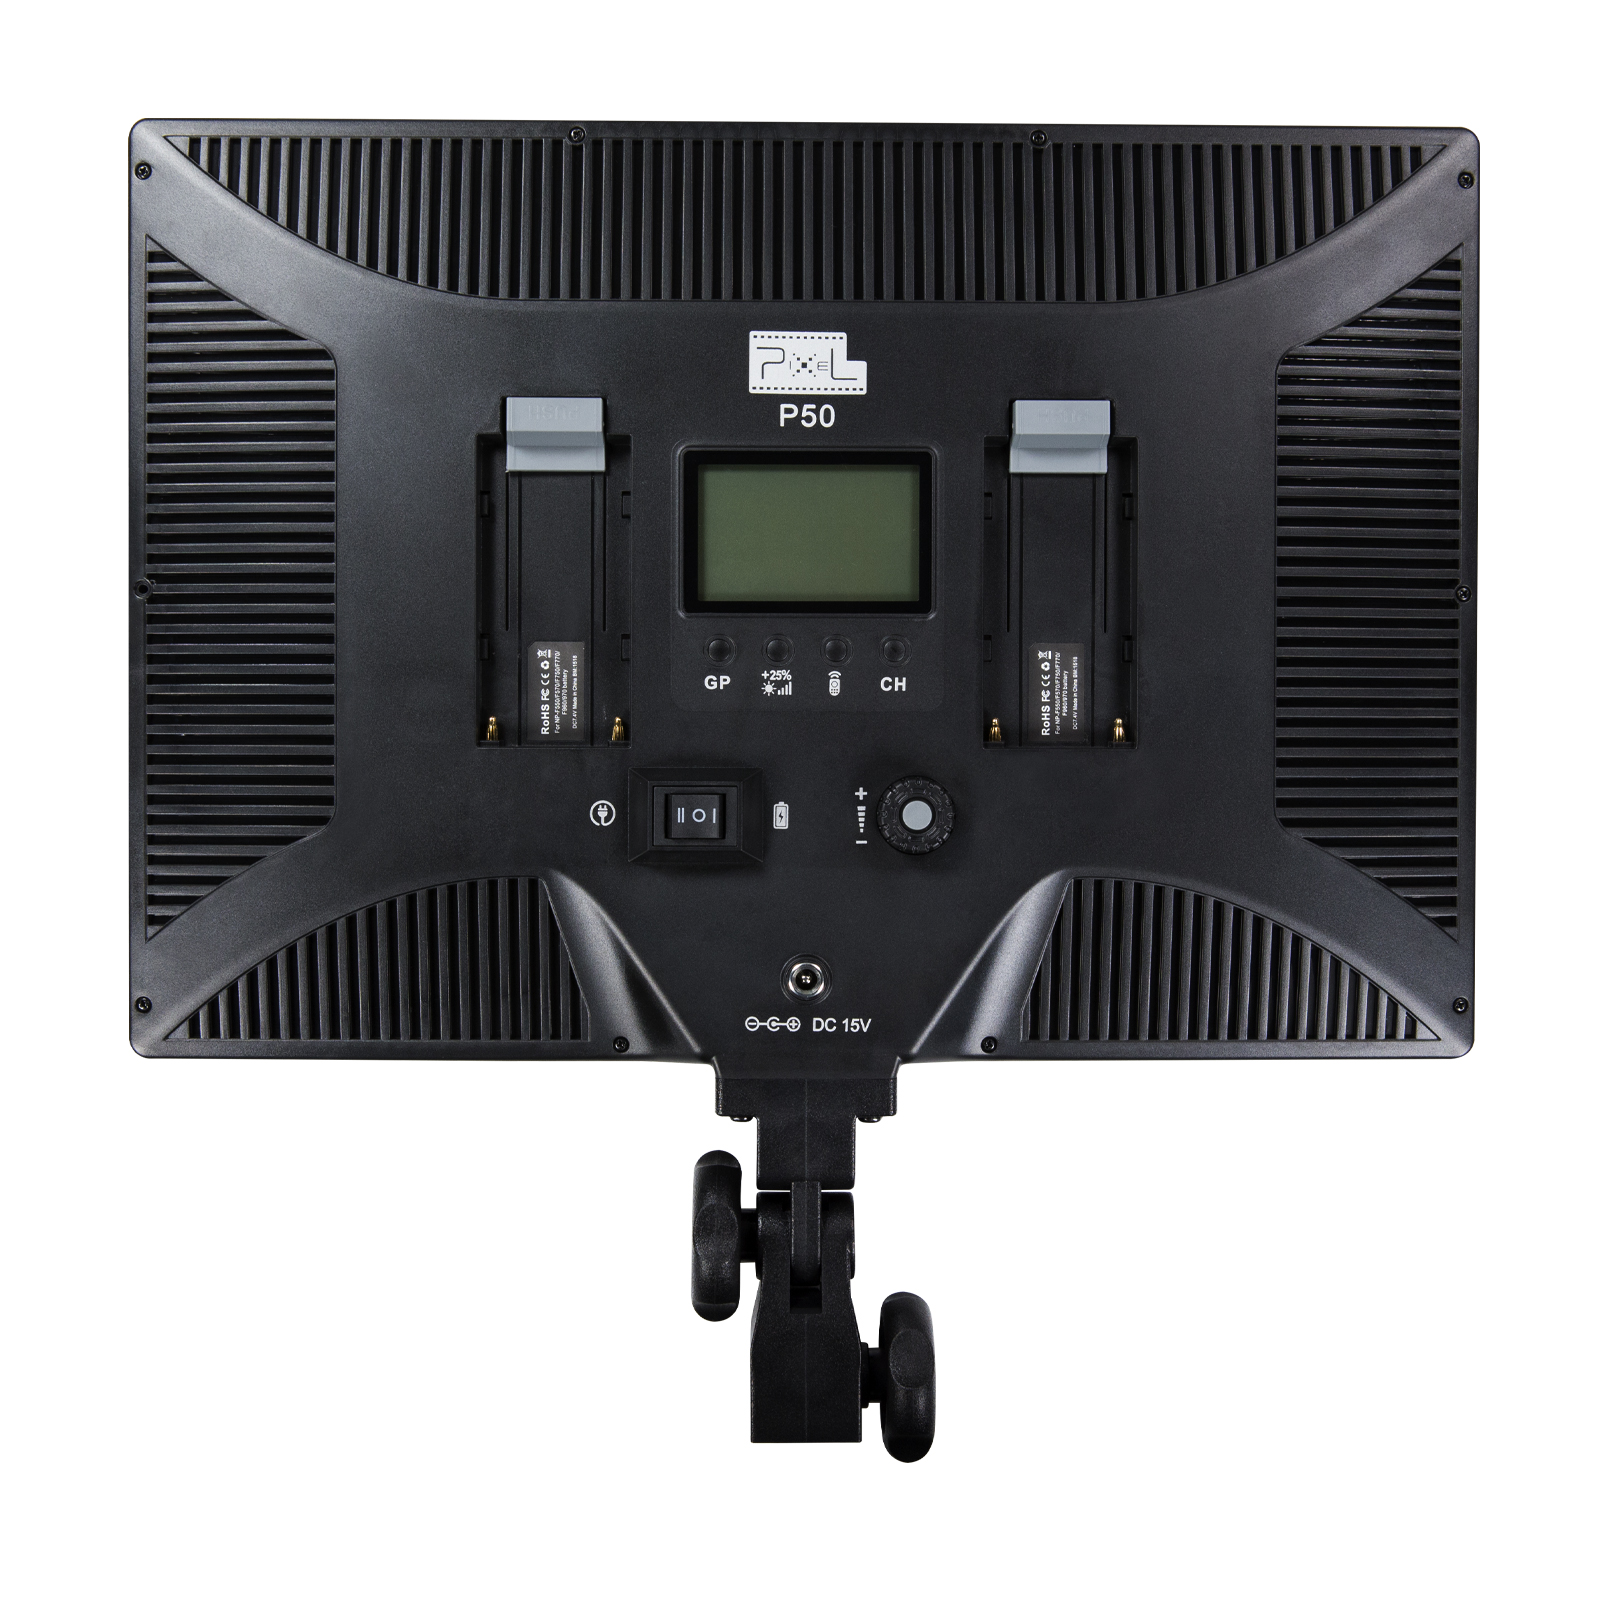 品色Pixel P50 平板超薄摄影灯,小巧便携,强大功能,随意补光